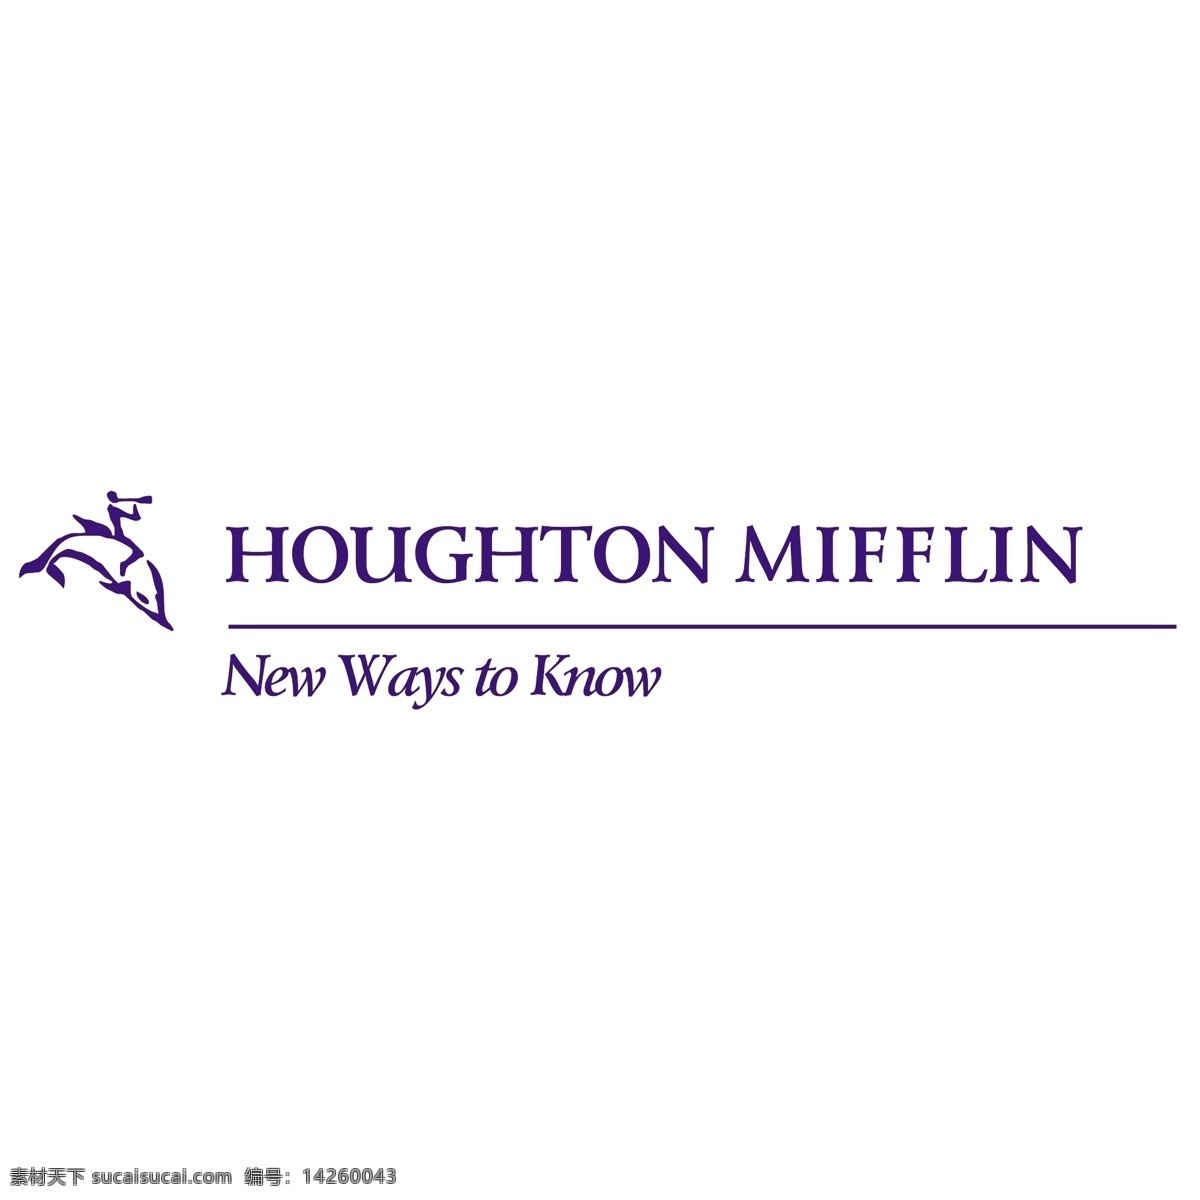 霍顿米夫林 免费 houghton mifflin 标识 白色